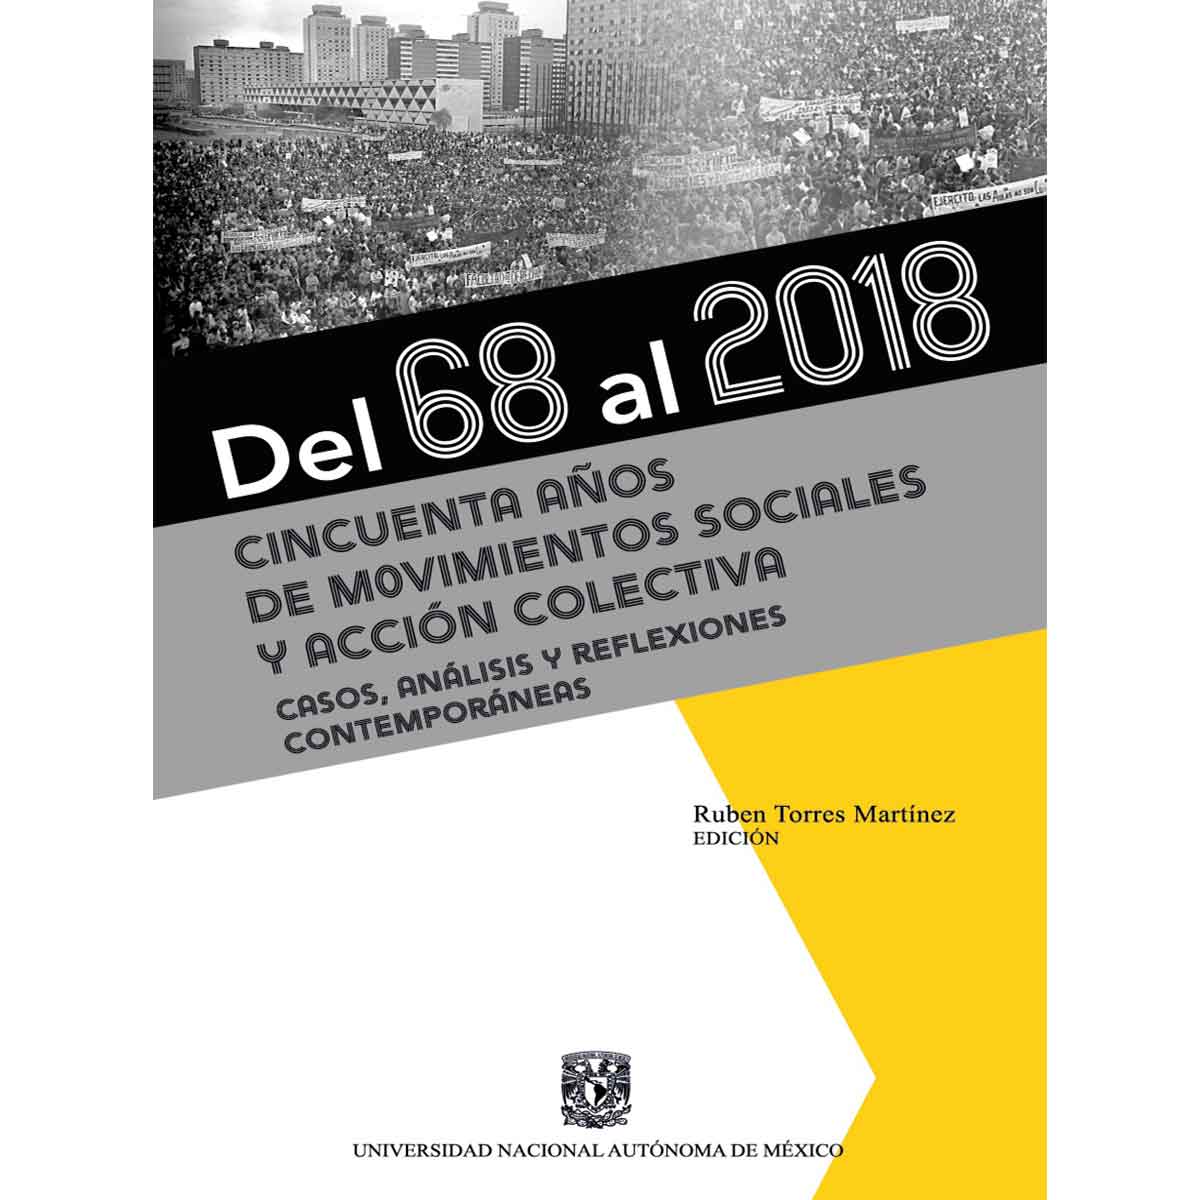 DEL 68 AL 2018. CINCUENTA AÑOS DE MOVIMIENTOS SOCIALES Y ACCIÓN COLECTIVA. CASOS, ANÁLISIS Y REFLEXIONES CONTEMPORÁNEAS